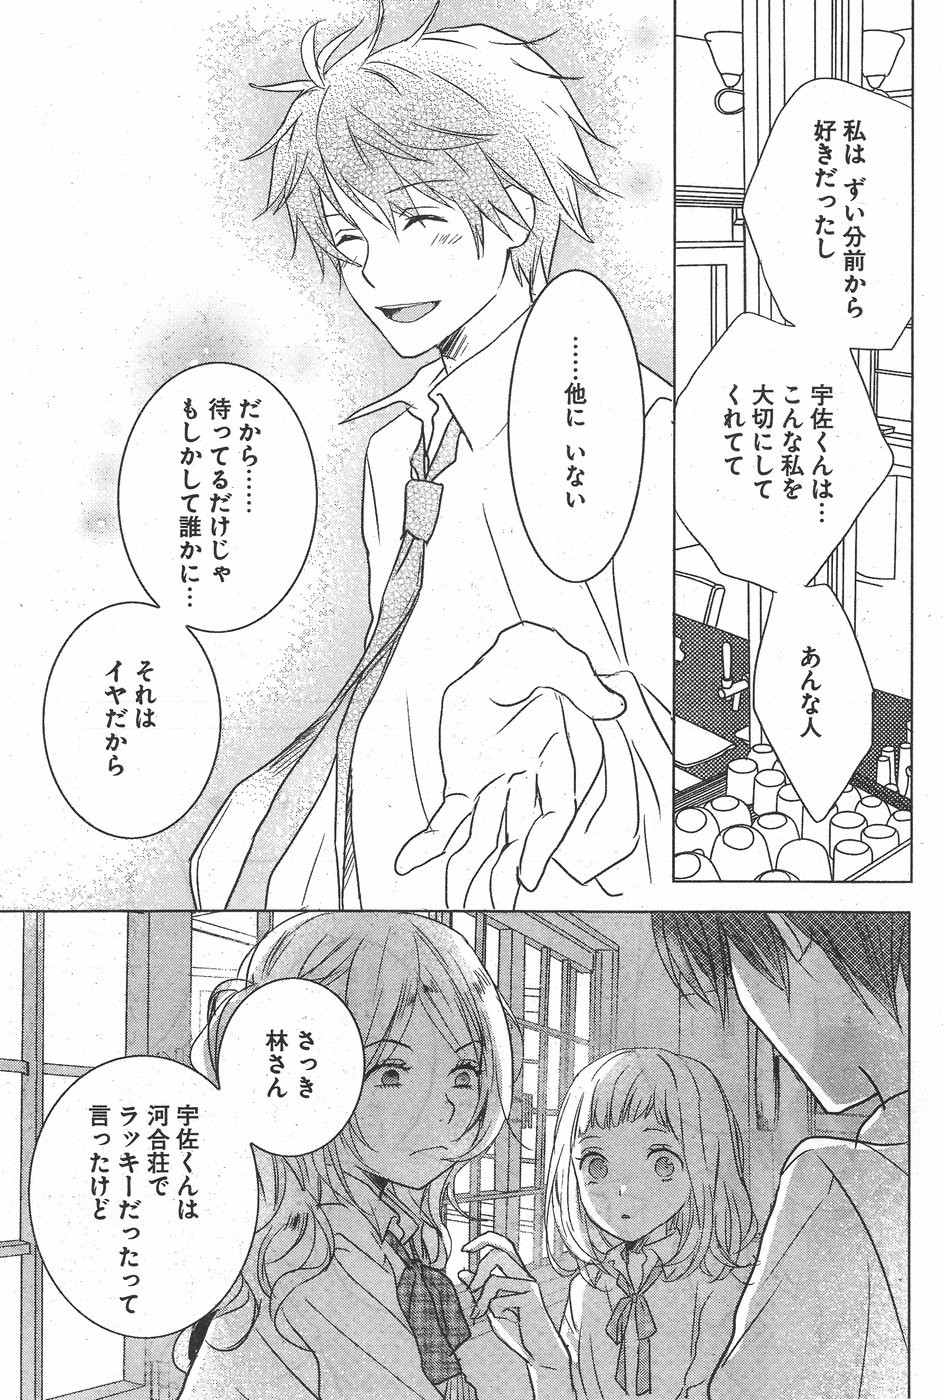 Bokura wa Minna Kawaisou - Chapter 78 - Page 25